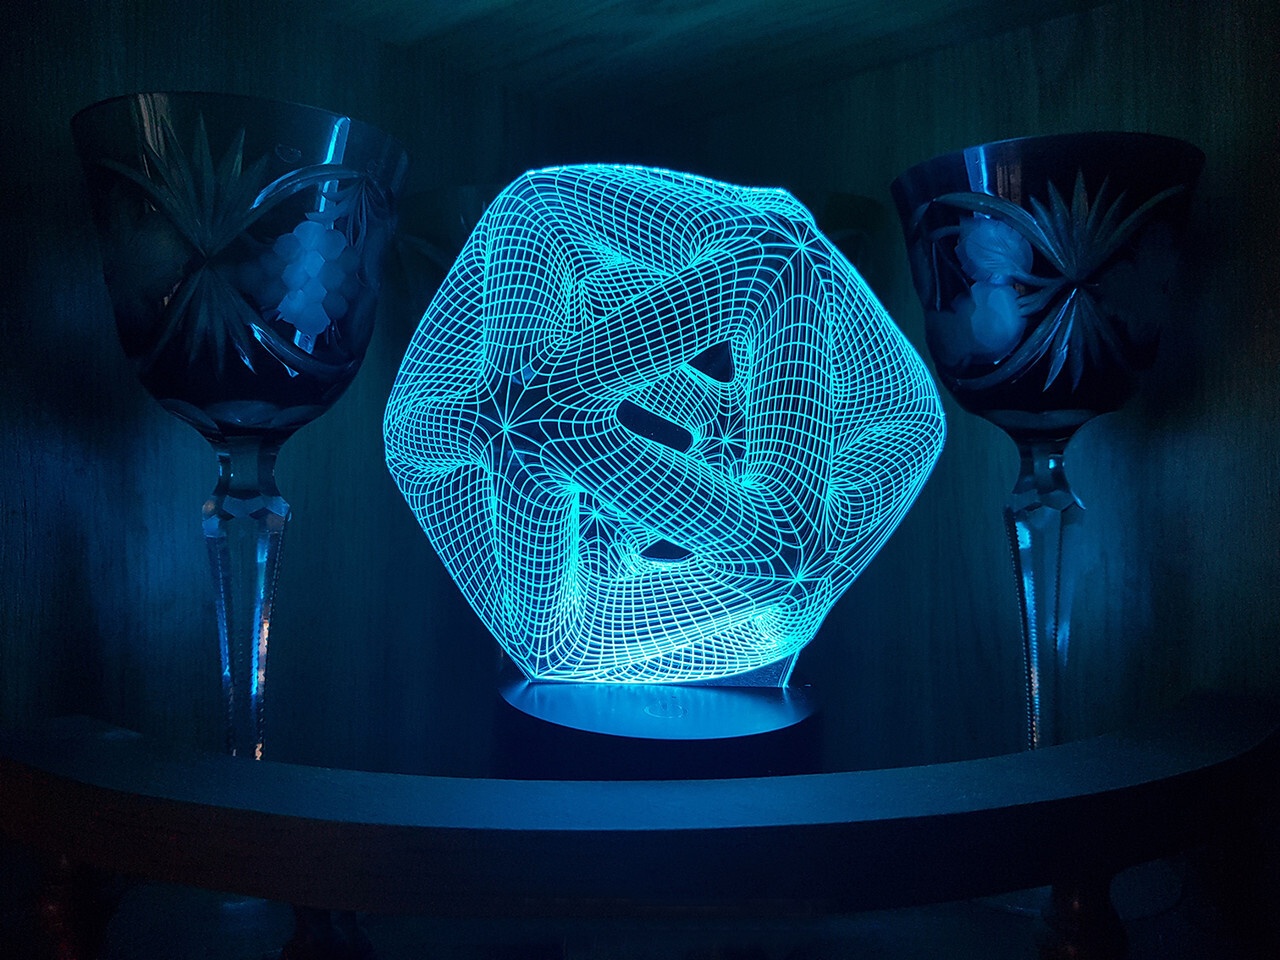 Lampada a illusione ottica acrilica con luce notturna 3D a icosaedro tagliata al laser